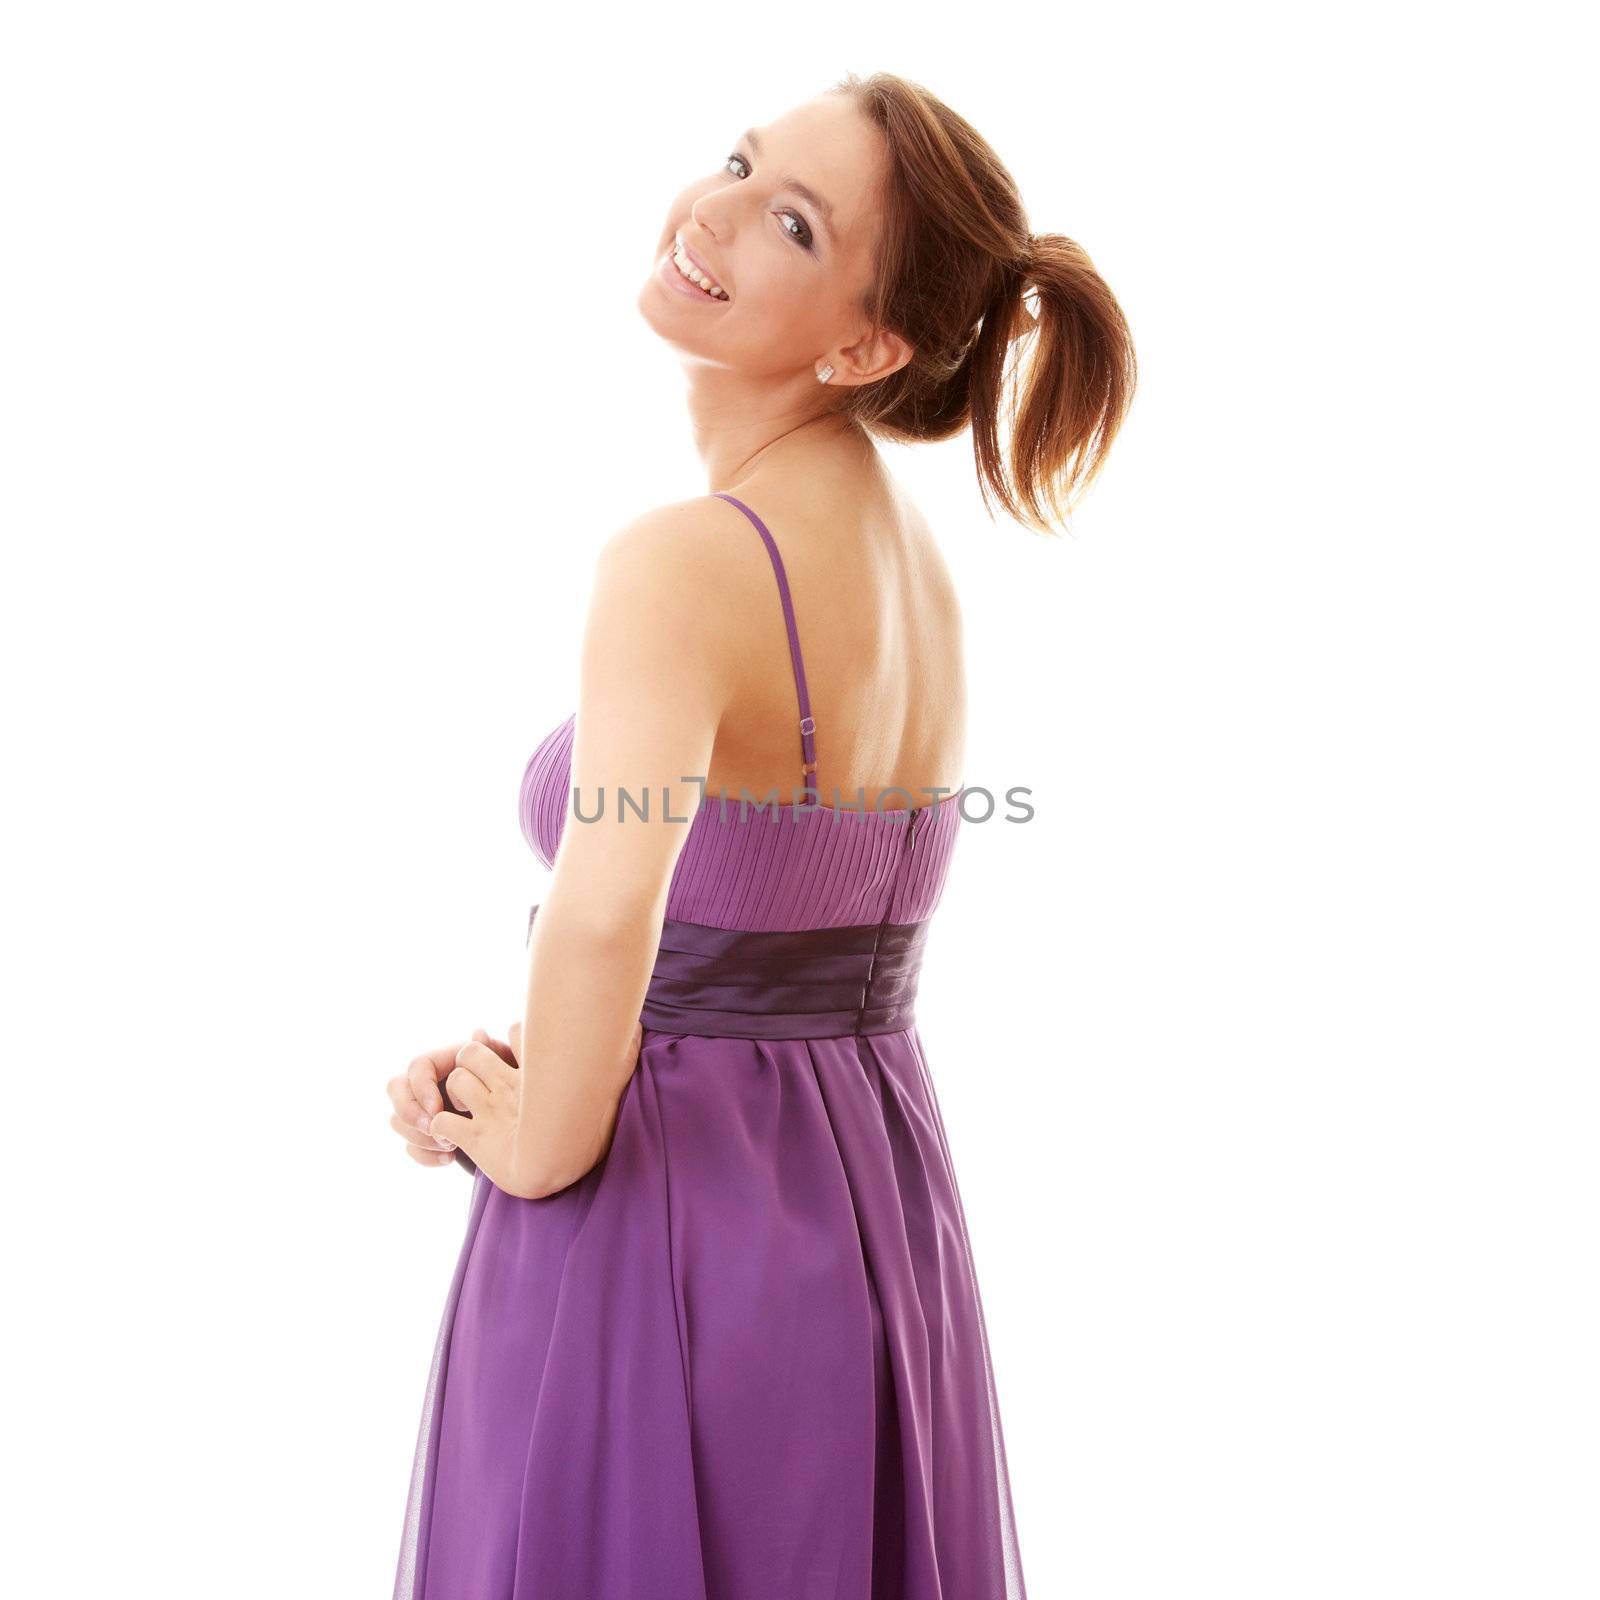 Attractive dancer girl in violet classic dress, studio shot